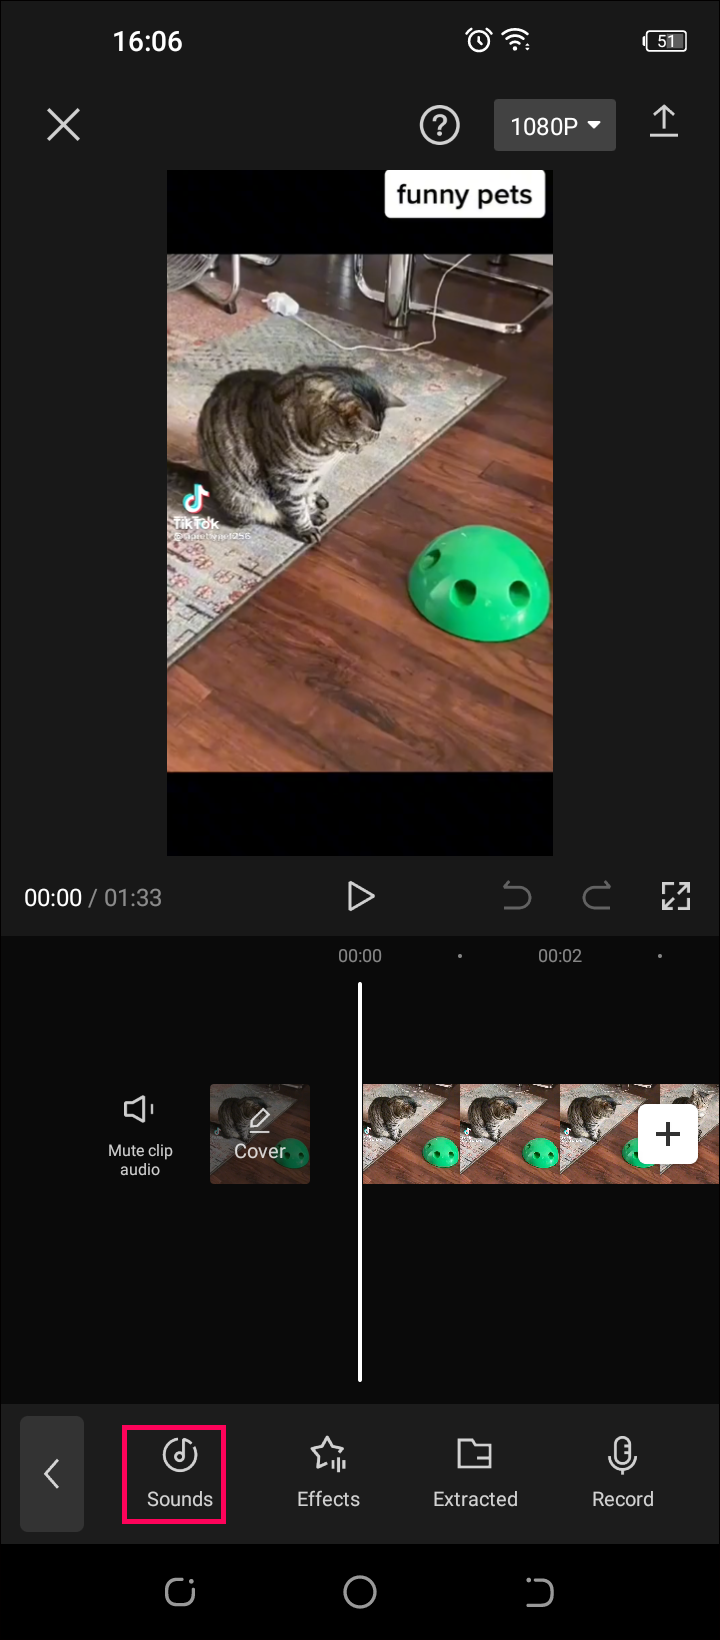 CapCut background là một trong những tính năng tuyệt vời của ứng dụng chỉnh sửa video CapCut. Với tính năng này, bạn có thể dễ dàng thay đổi phông nền của video một cách nhanh chóng và hiệu quả. Hãy xem hình ảnh liên quan đến từ khóa này để khám phá thêm nhiều tính năng thú vị của CapCut.